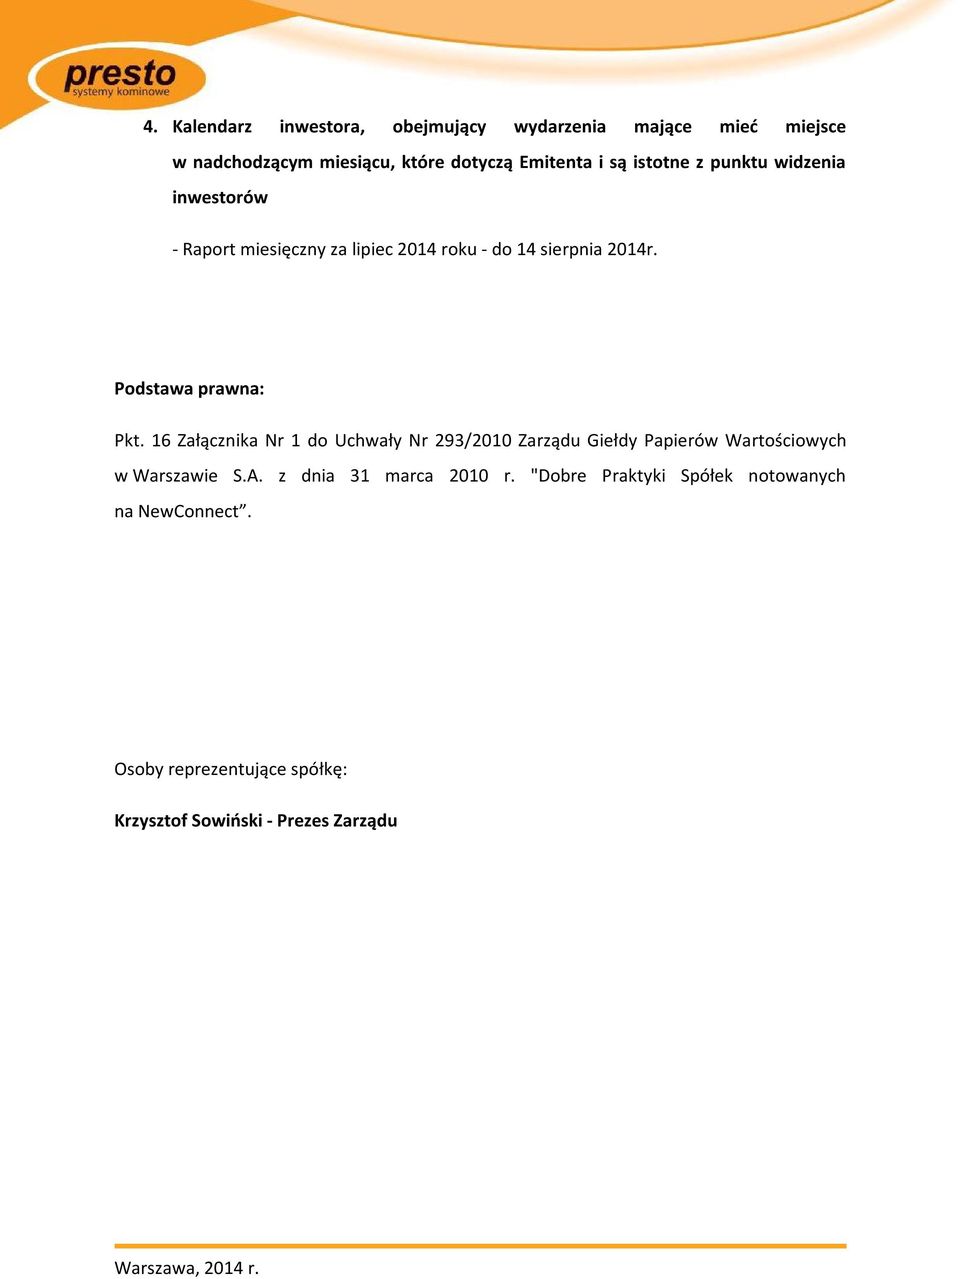 Podstawa prawna: Pkt. 16 Załącznika Nr 1 do Uchwały Nr 293/2010 Zarządu Giełdy Papierów Wartościowych w Warszawie S.A.